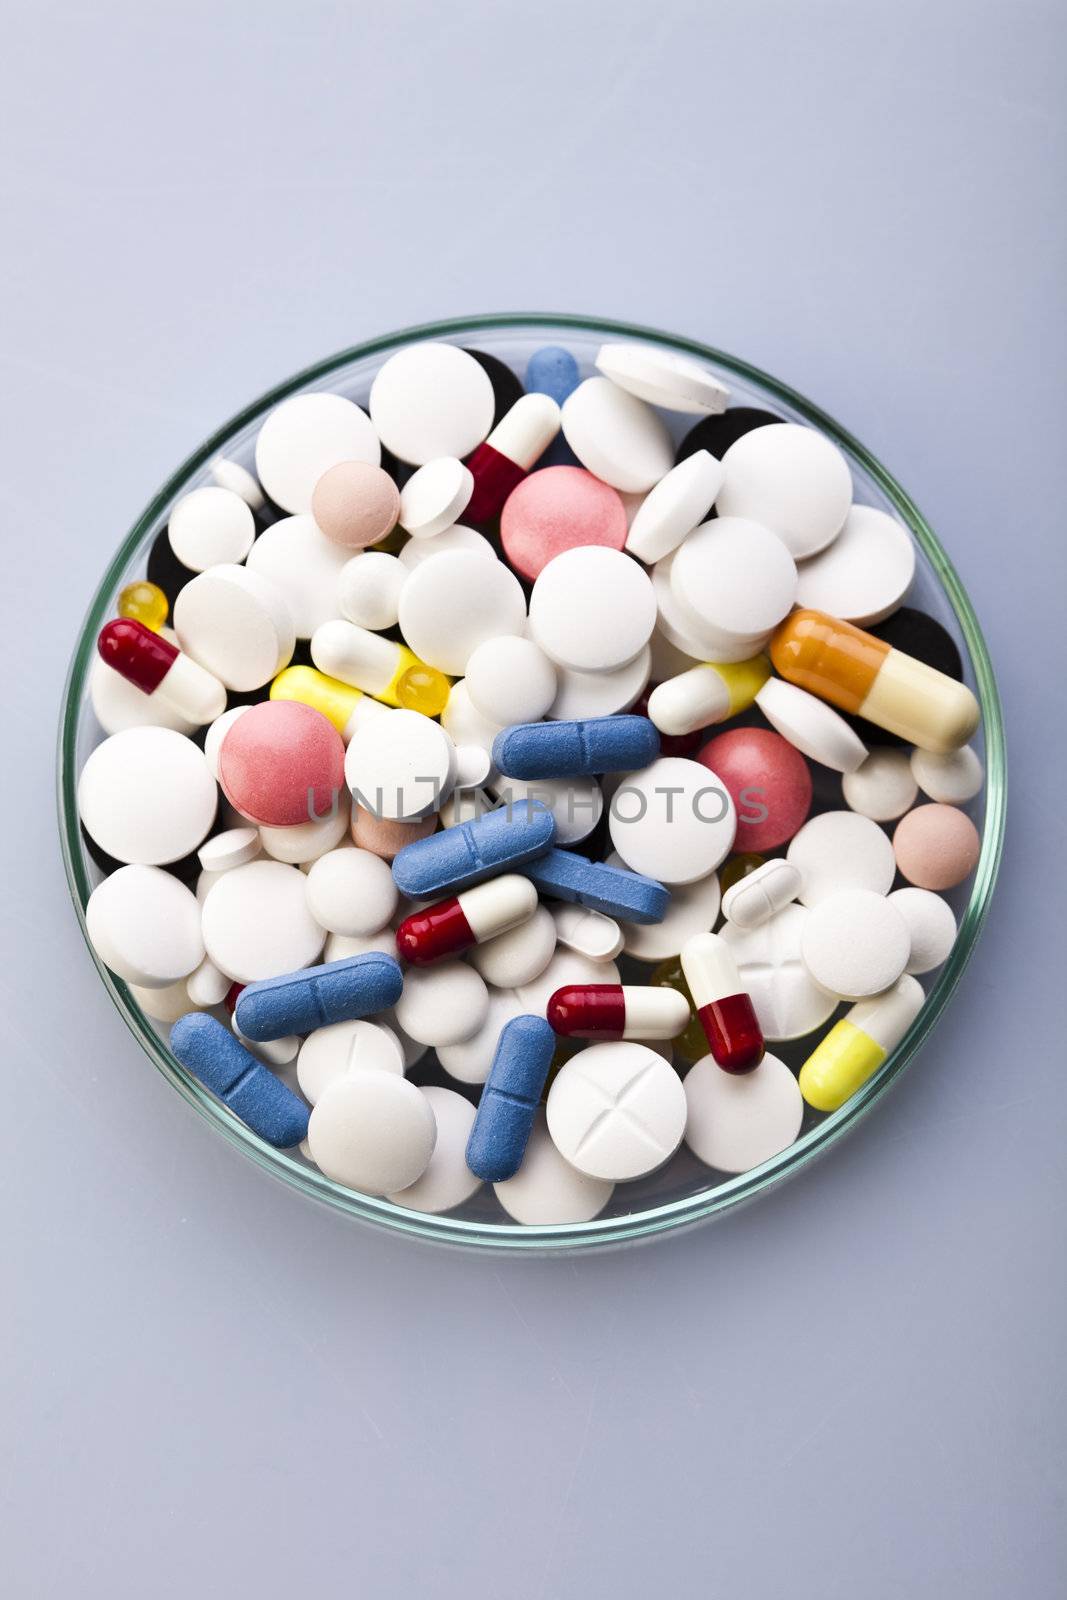 Vitamins, pills and tablets  by JanPietruszka